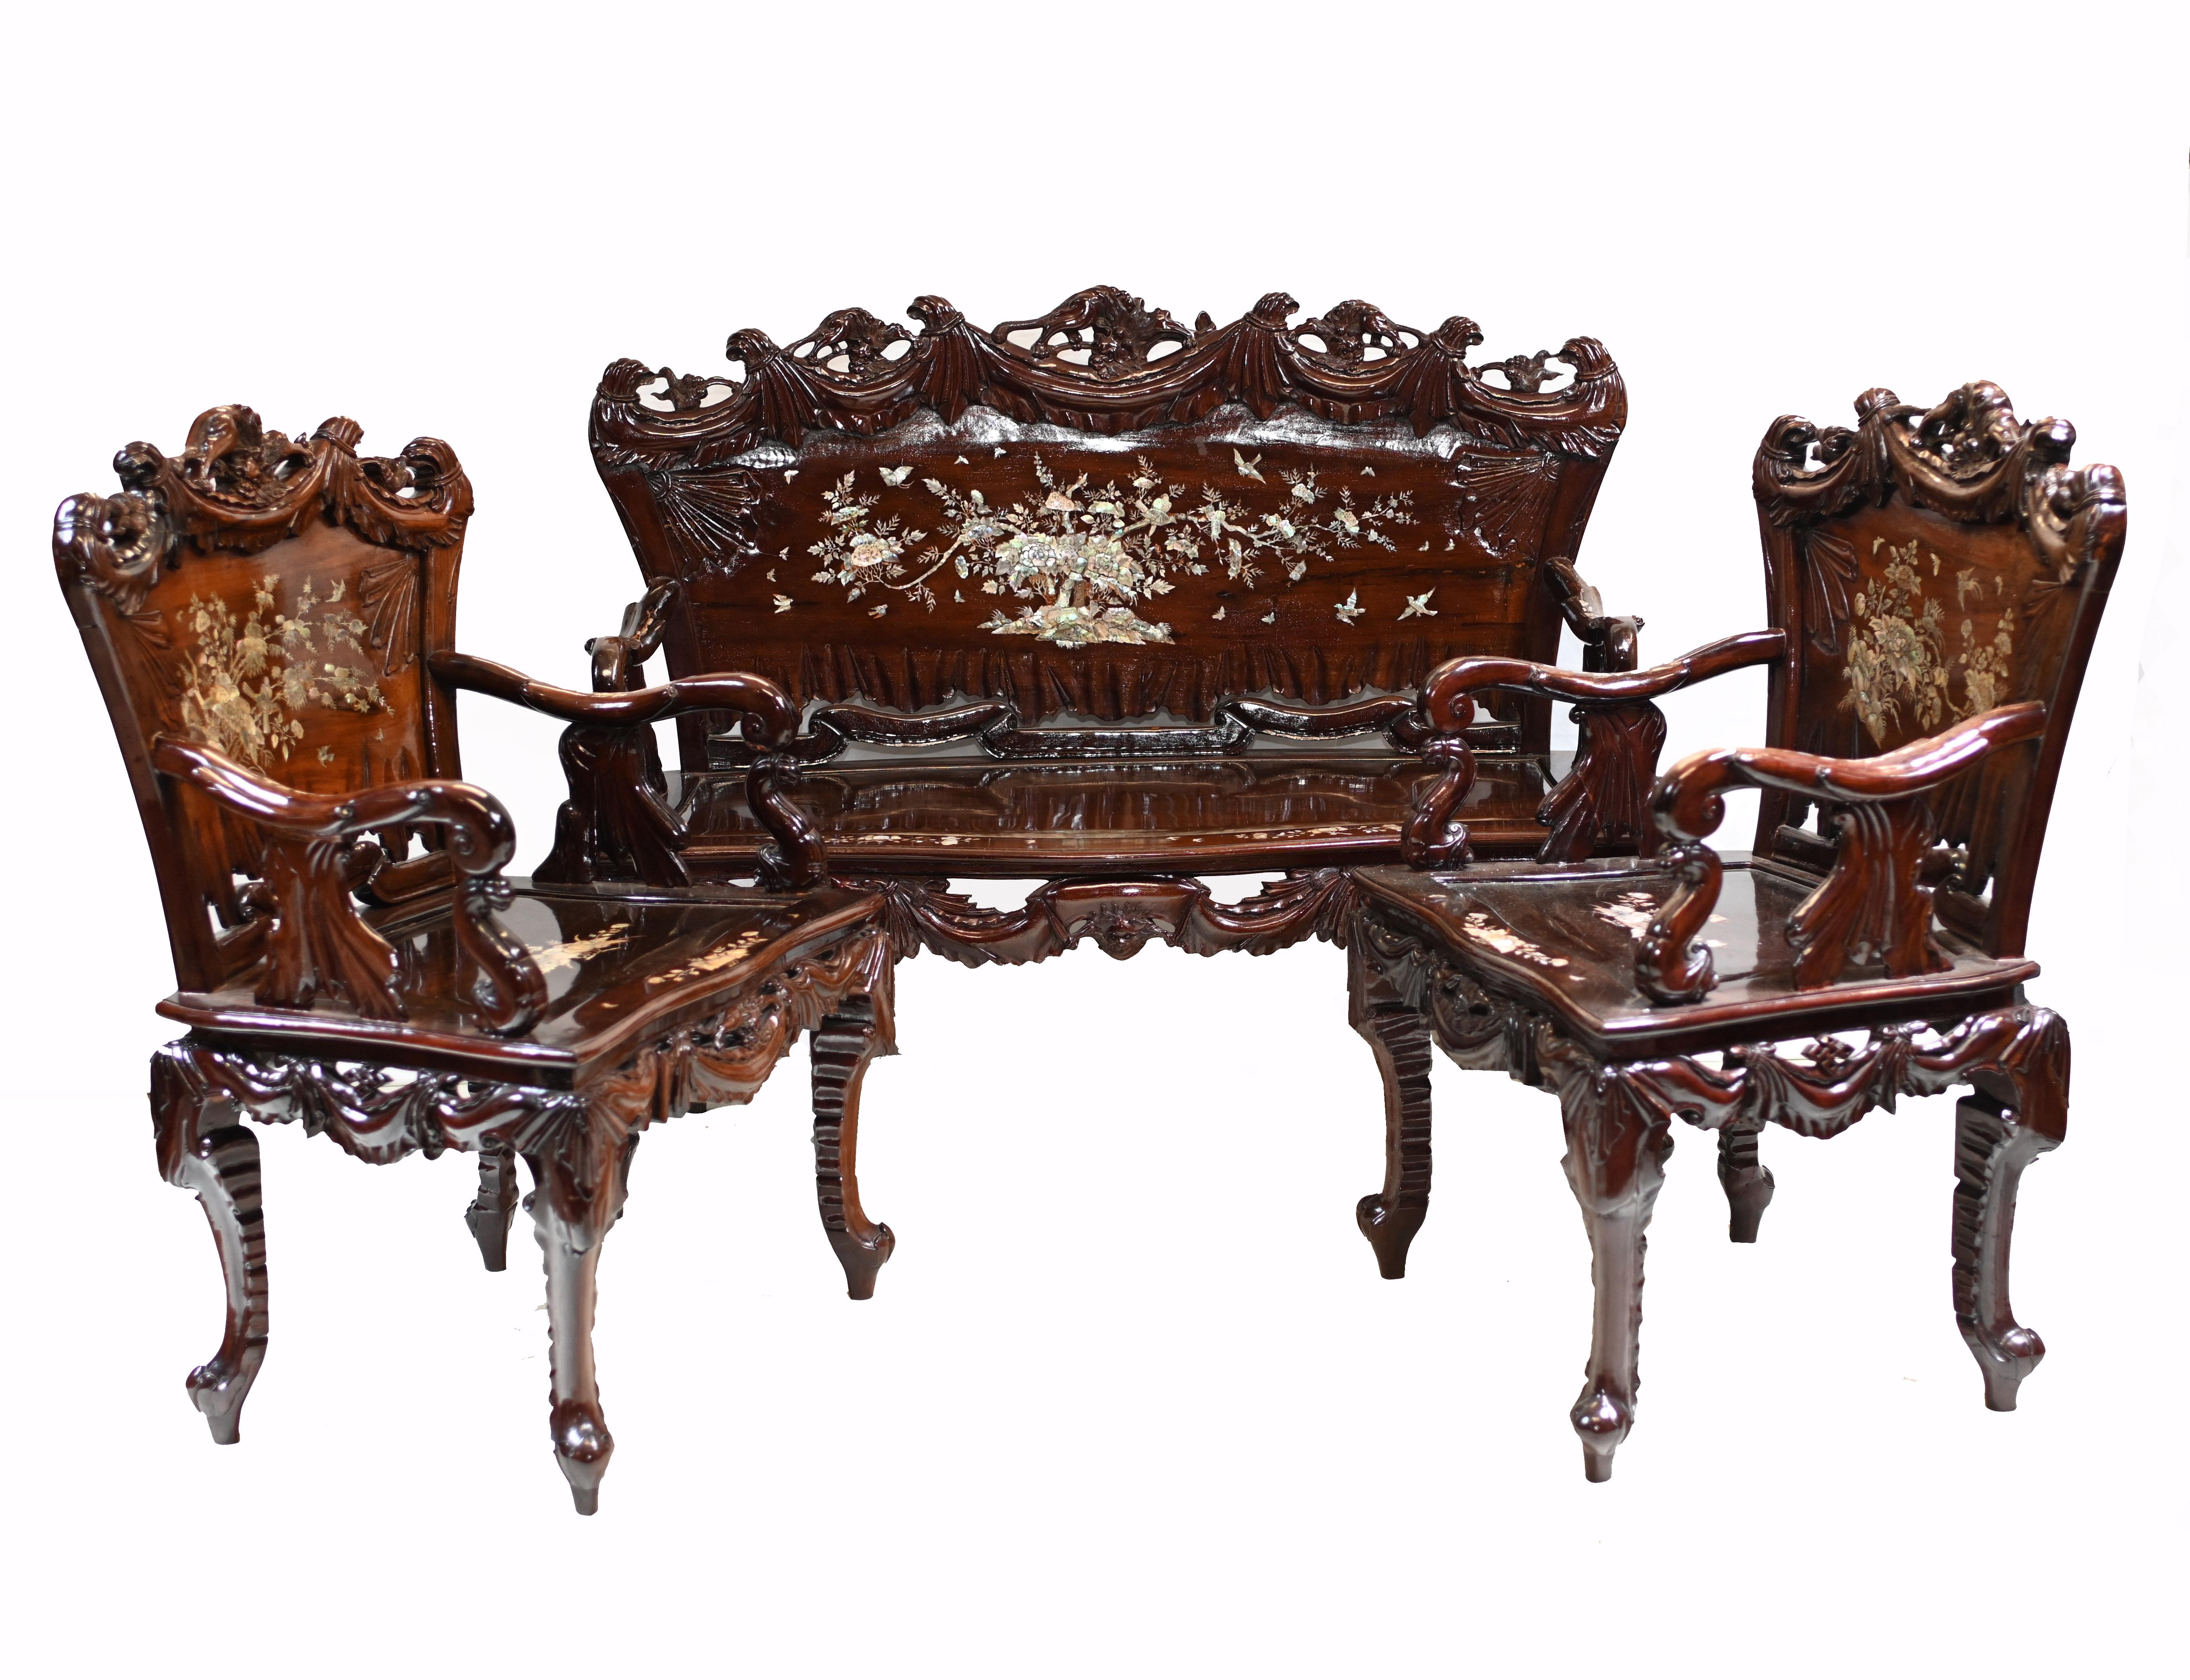 Wunderschönes antikes chinesisches Sofa und zwei passende Sessel.
Reichlich verziert mit Perlmutt-Einlegearbeiten.
Enthält Details wie Bäume, Vögel, Schmetterlinge und andere chinesische Motive
Großartiges Einrichtungsstück und wir datieren